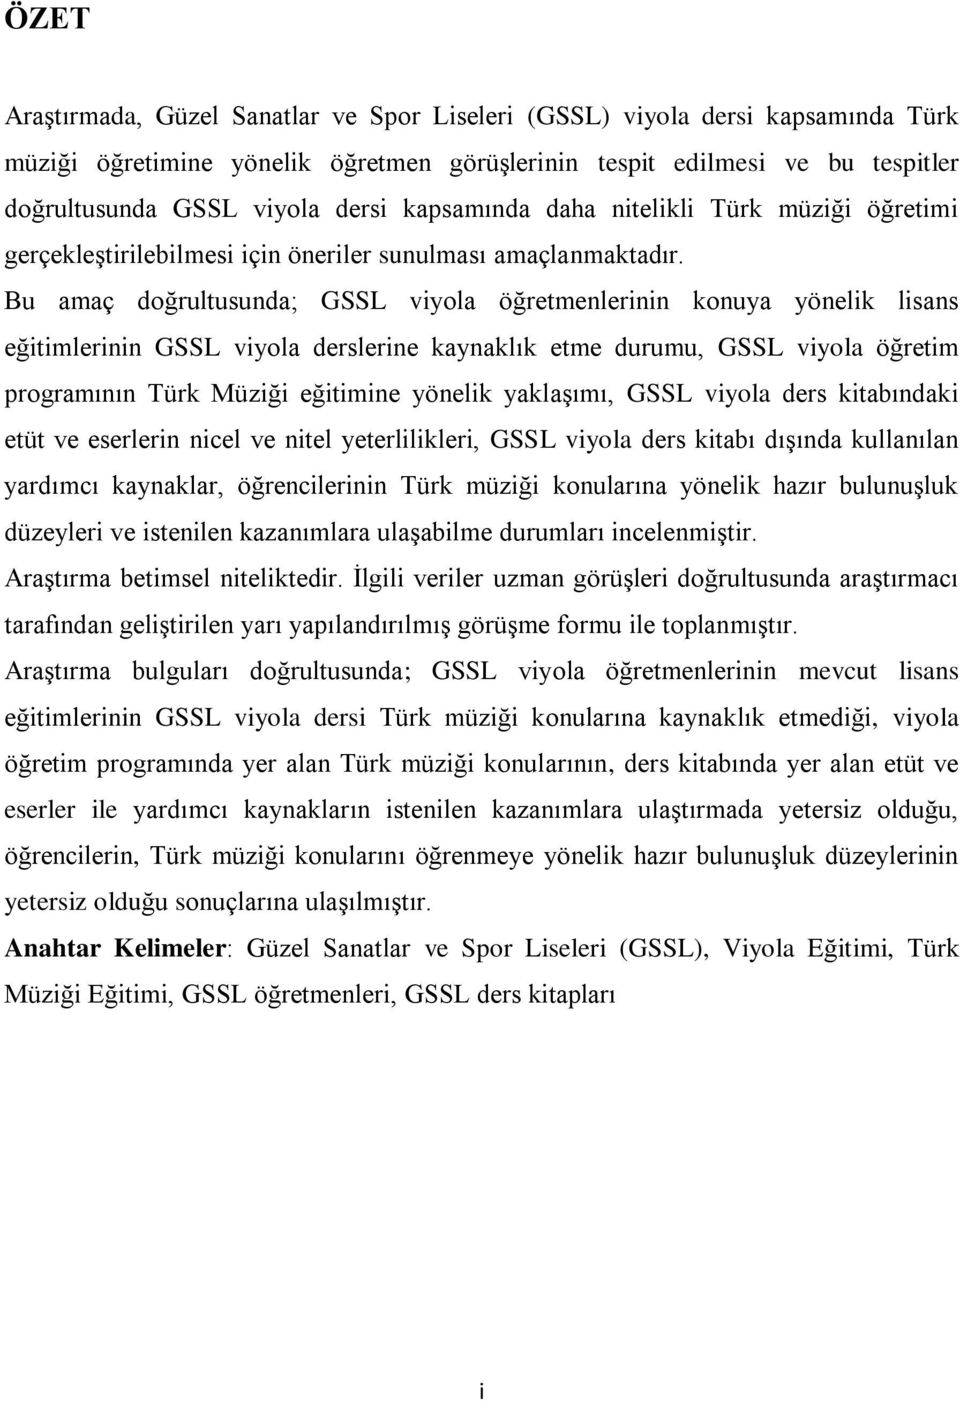 Bu amaç doğrultusunda; GSSL viyola öğretmenlerinin konuya yönelik lisans eğitimlerinin GSSL viyola derslerine kaynaklık etme durumu, GSSL viyola öğretim programının Türk Müziği eğitimine yönelik